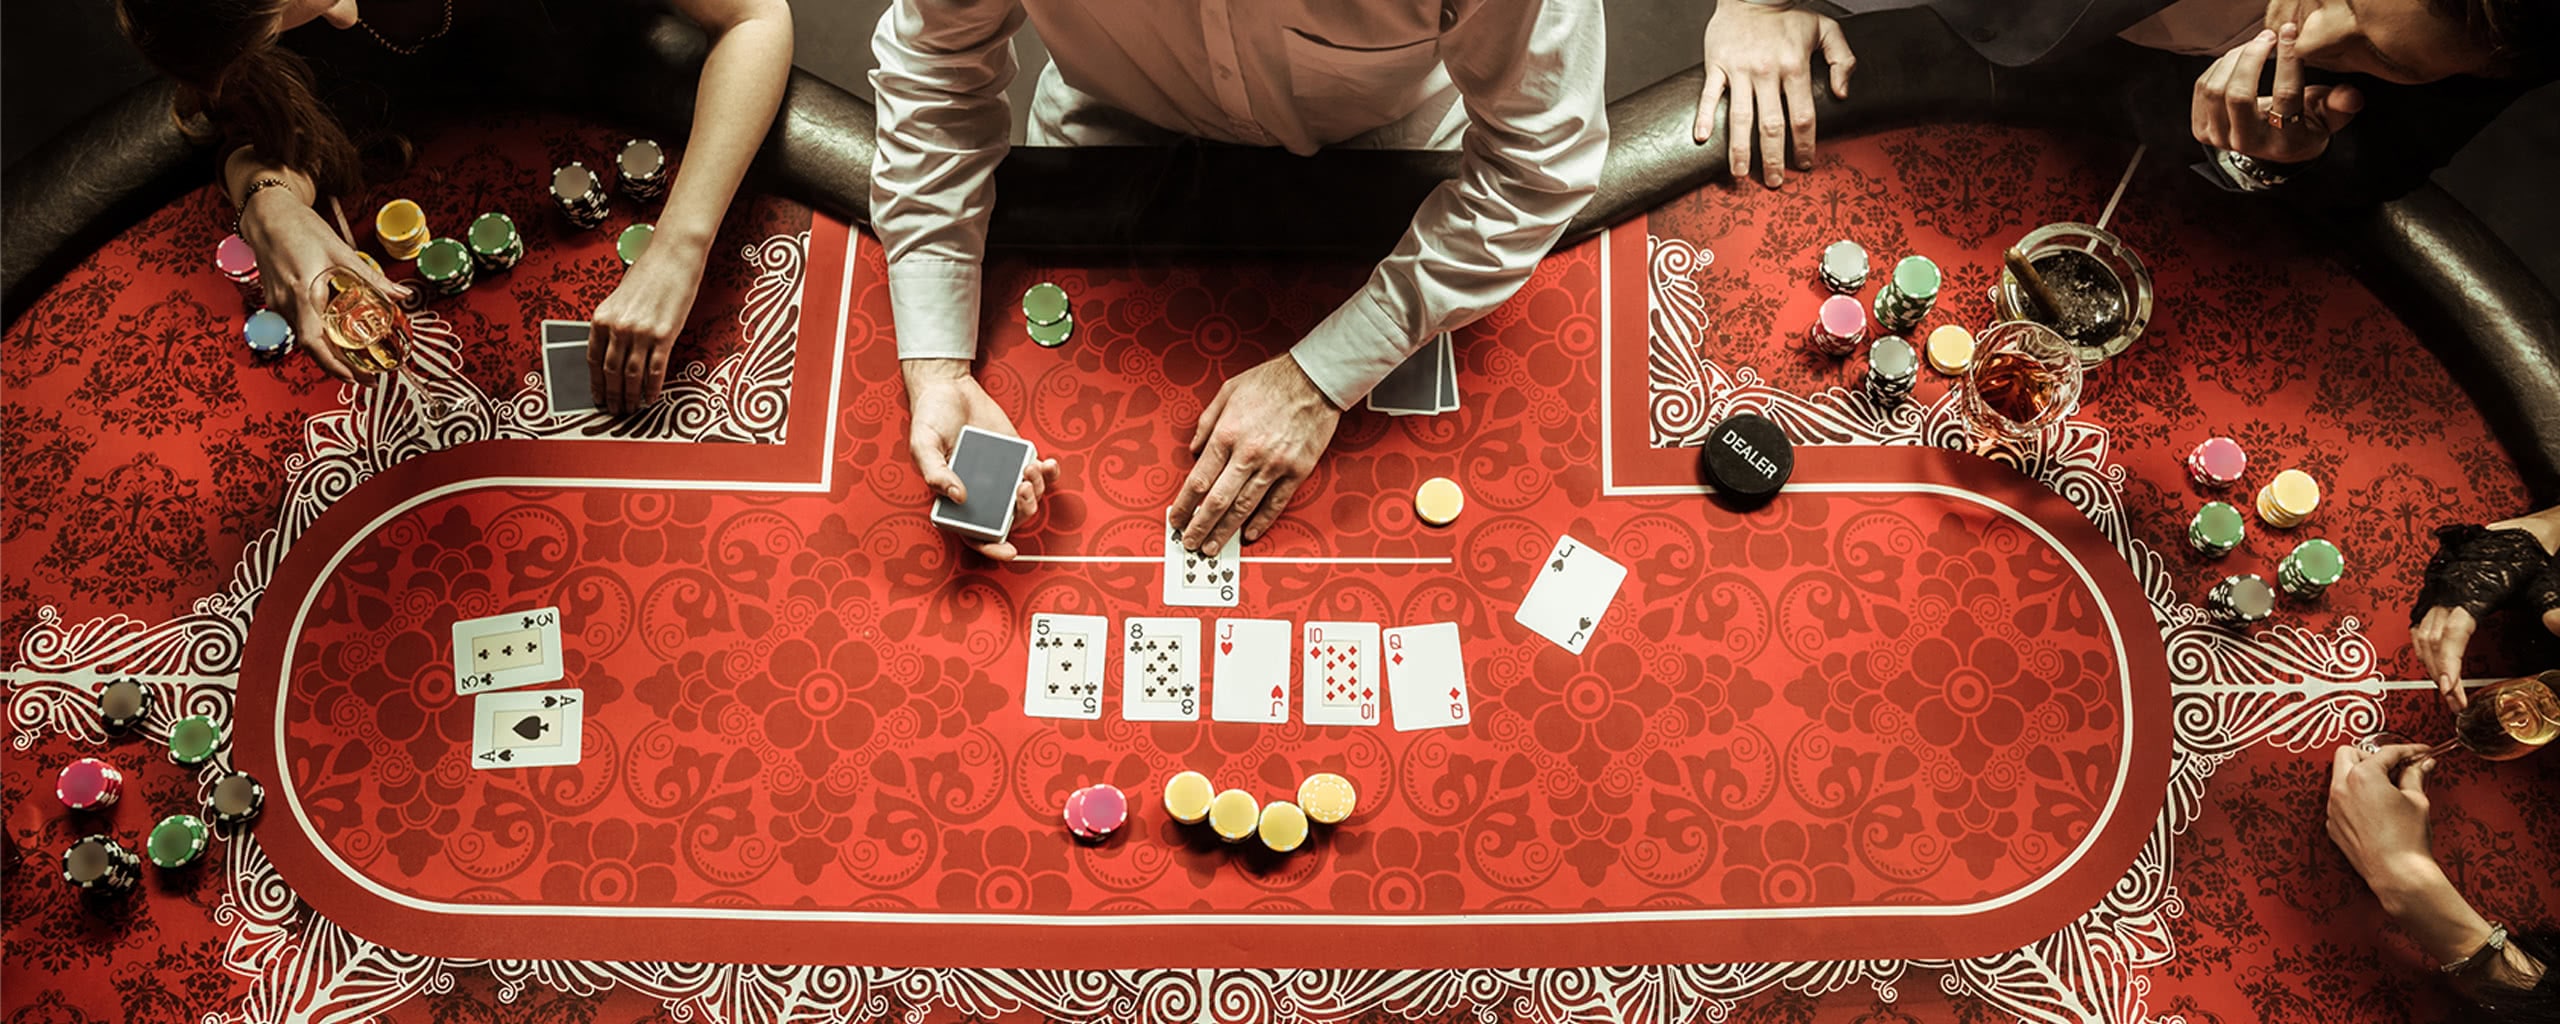 poker game in a casino